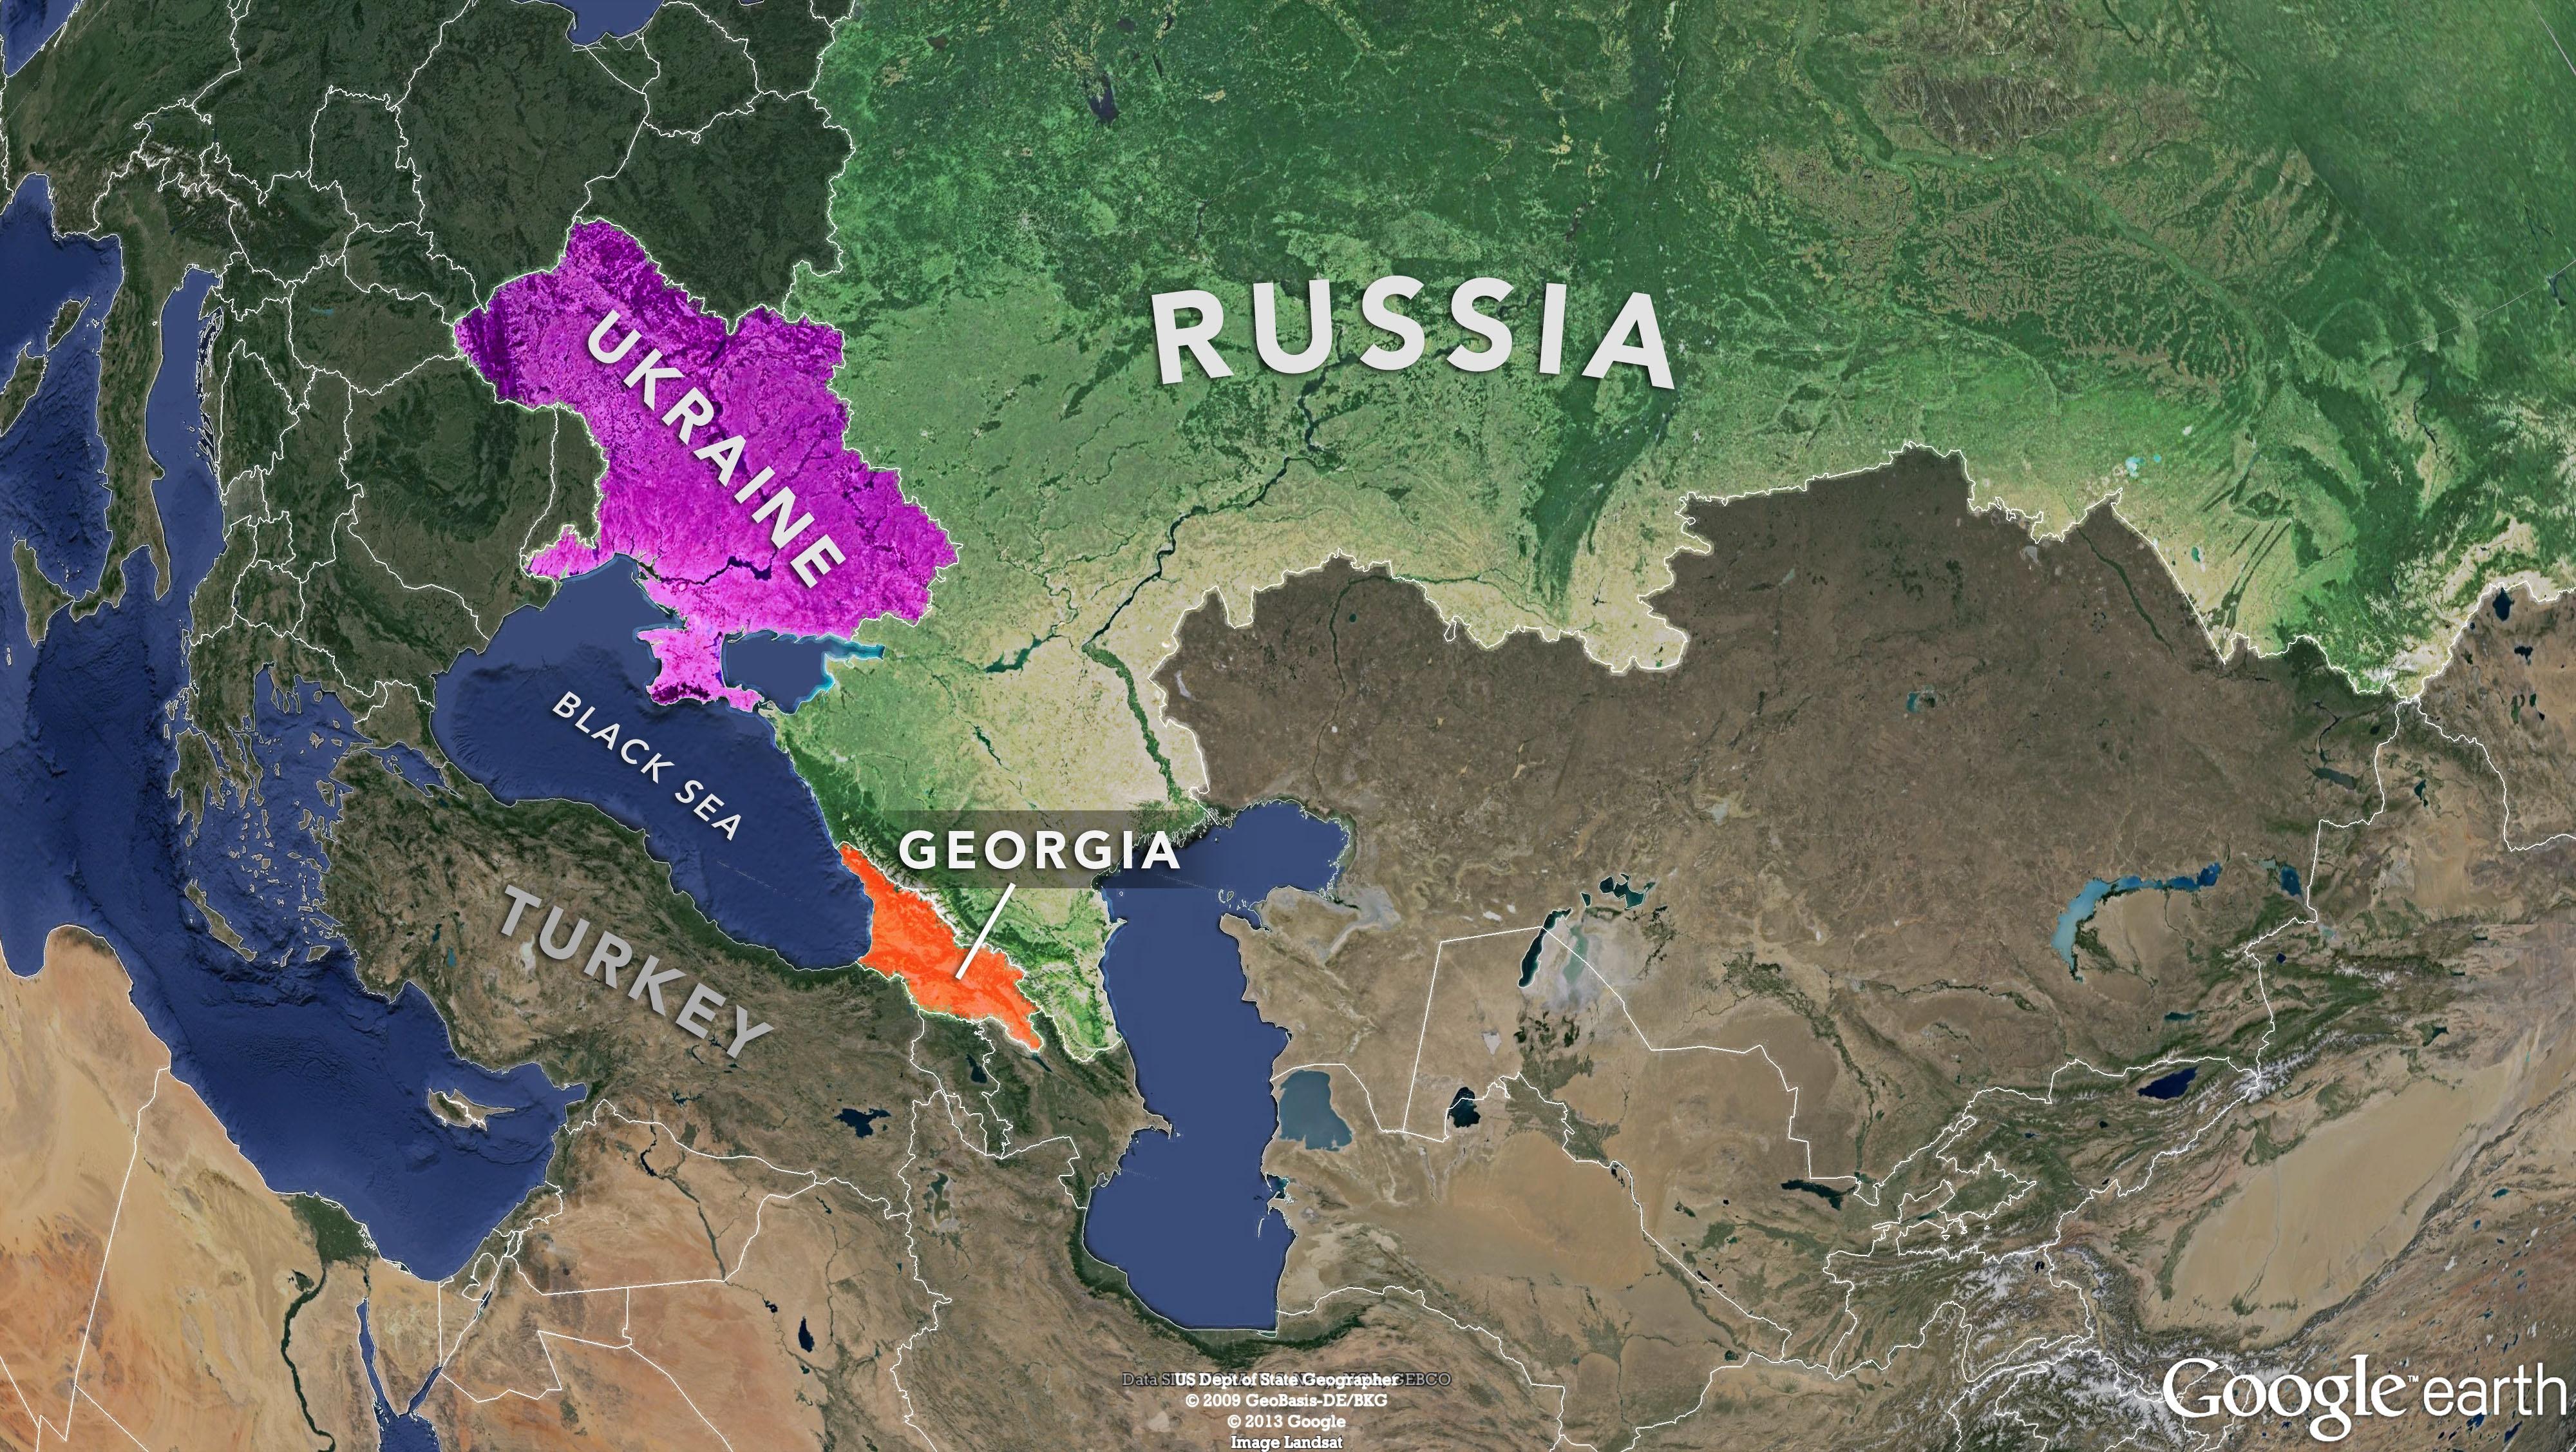 Οι πολιτικές διώξεις στην Αν. Ευρώπη για την προετοιμασία του πολέμου με τη Ρωσία (και ένα σημείωμα για την Ουγγαρία, τοn Τράμπ και τους πρόσφυγες)